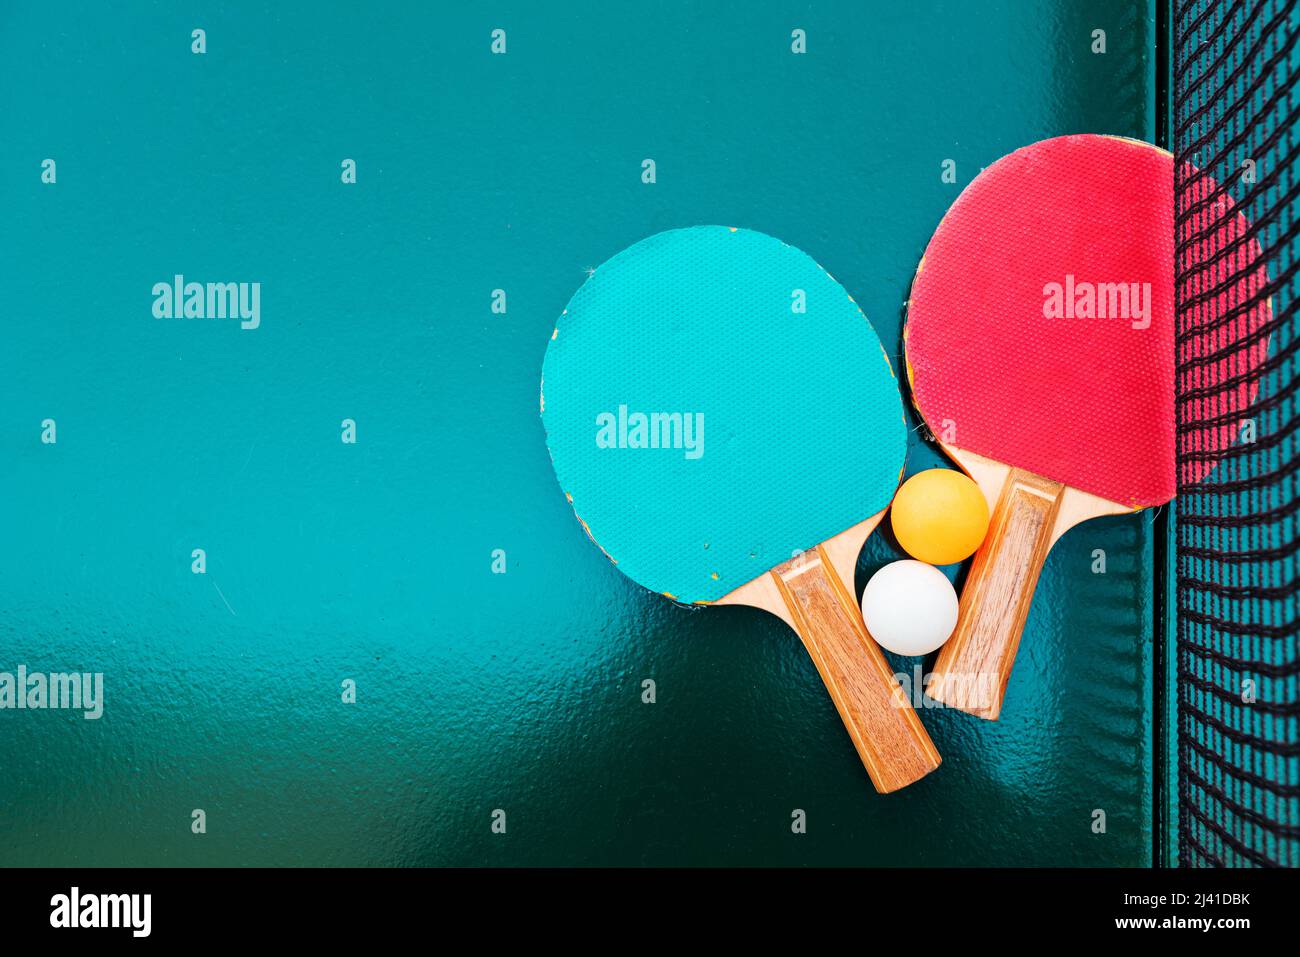 Raquettes de tennis de table et balles de ping-pong sur une surface de table verte avec filet, mise au point sélective Banque D'Images